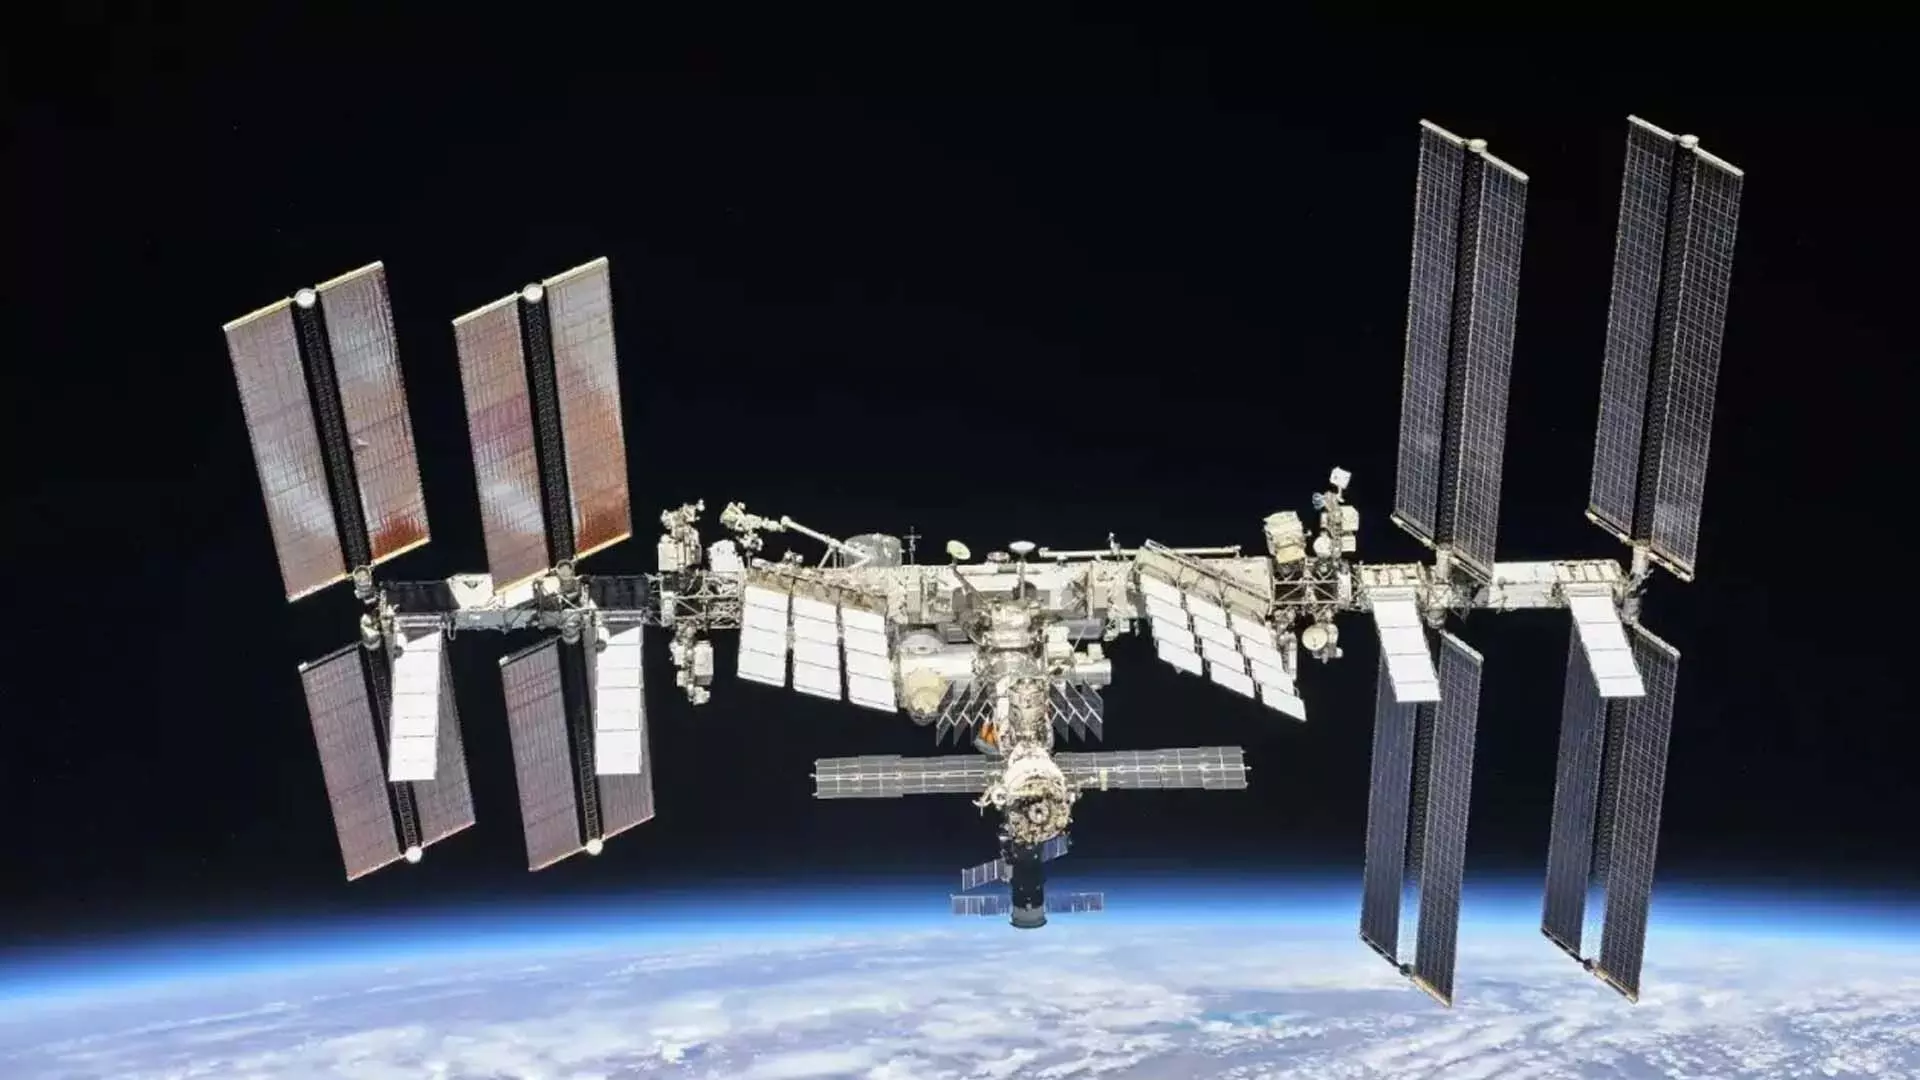 अमेरिका साल के अंत तक एक भारतीय अंतरिक्ष यात्री को अंतरराष्ट्रीय अंतरिक्ष स्टेशन पर भेजेगा- अमेरिकी दूत